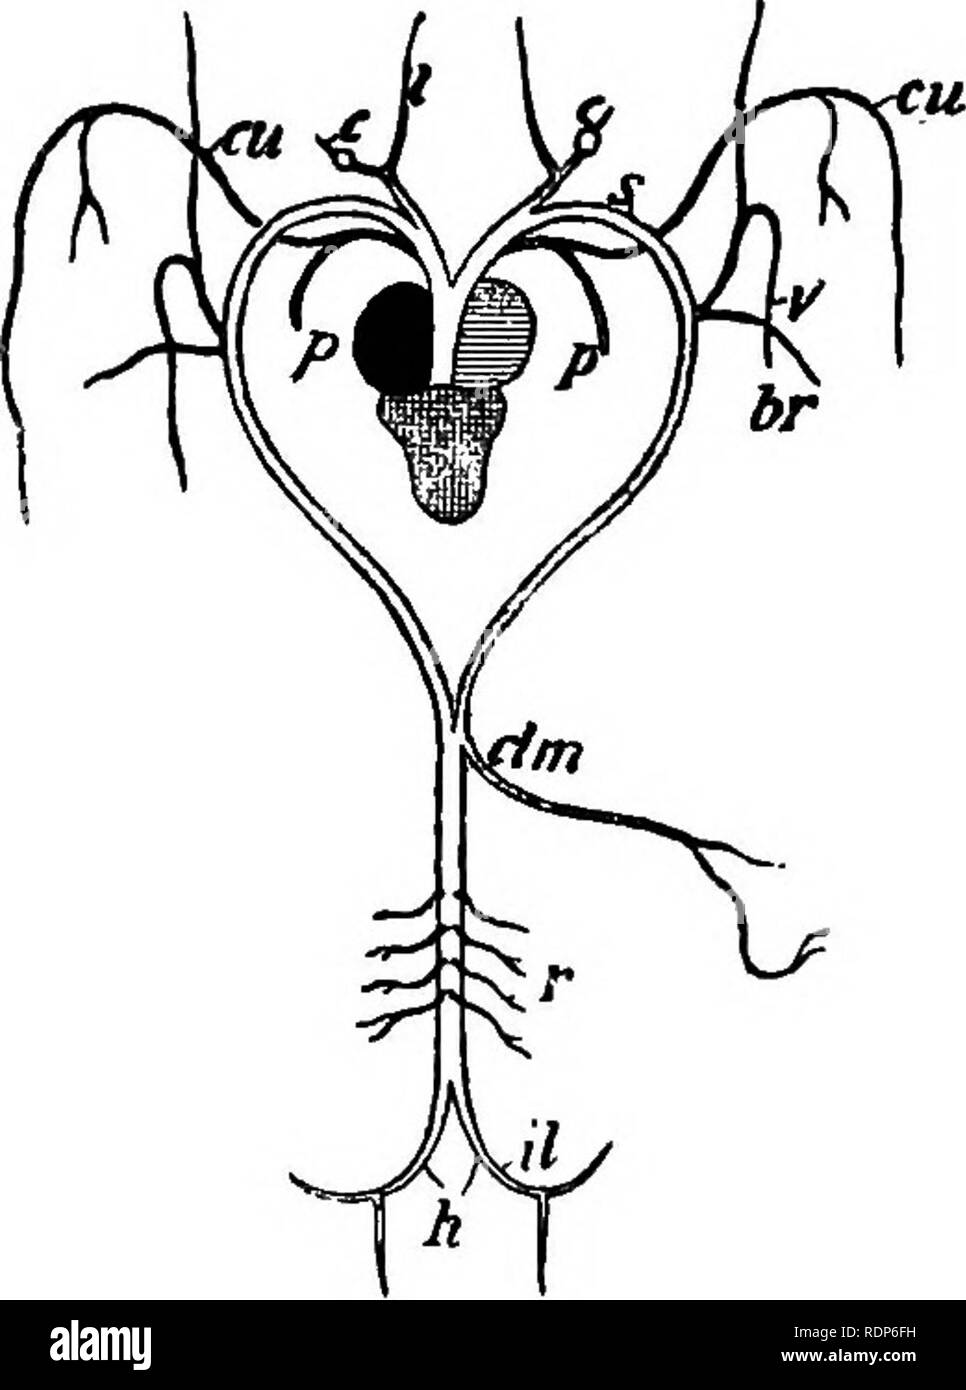 . Contorni di zoologia. Zoologia. Il sistema arterioso. 543 corrispondente alla seconda brachiale efferente del tadpole, dà off- l'arteria laringea alla laringe; esofagea all'esofago; la occipito vertebrali - per la testa e la colonna vertebrale ; la vena succlavia brachiale o alla ribalta-arto. Da sinistra arco aortico, appena come esso unisce con i suoi colleghi dell'altro lato per formare la dorsale aorta o da begin- ning della dorsale aorta, ci è dato via la coeliaco-mesenterici di stomaco e intestino, fegato e milza. Indietro ulteriormente l'aorta dorsale dà off- l'arte renale Foto Stock